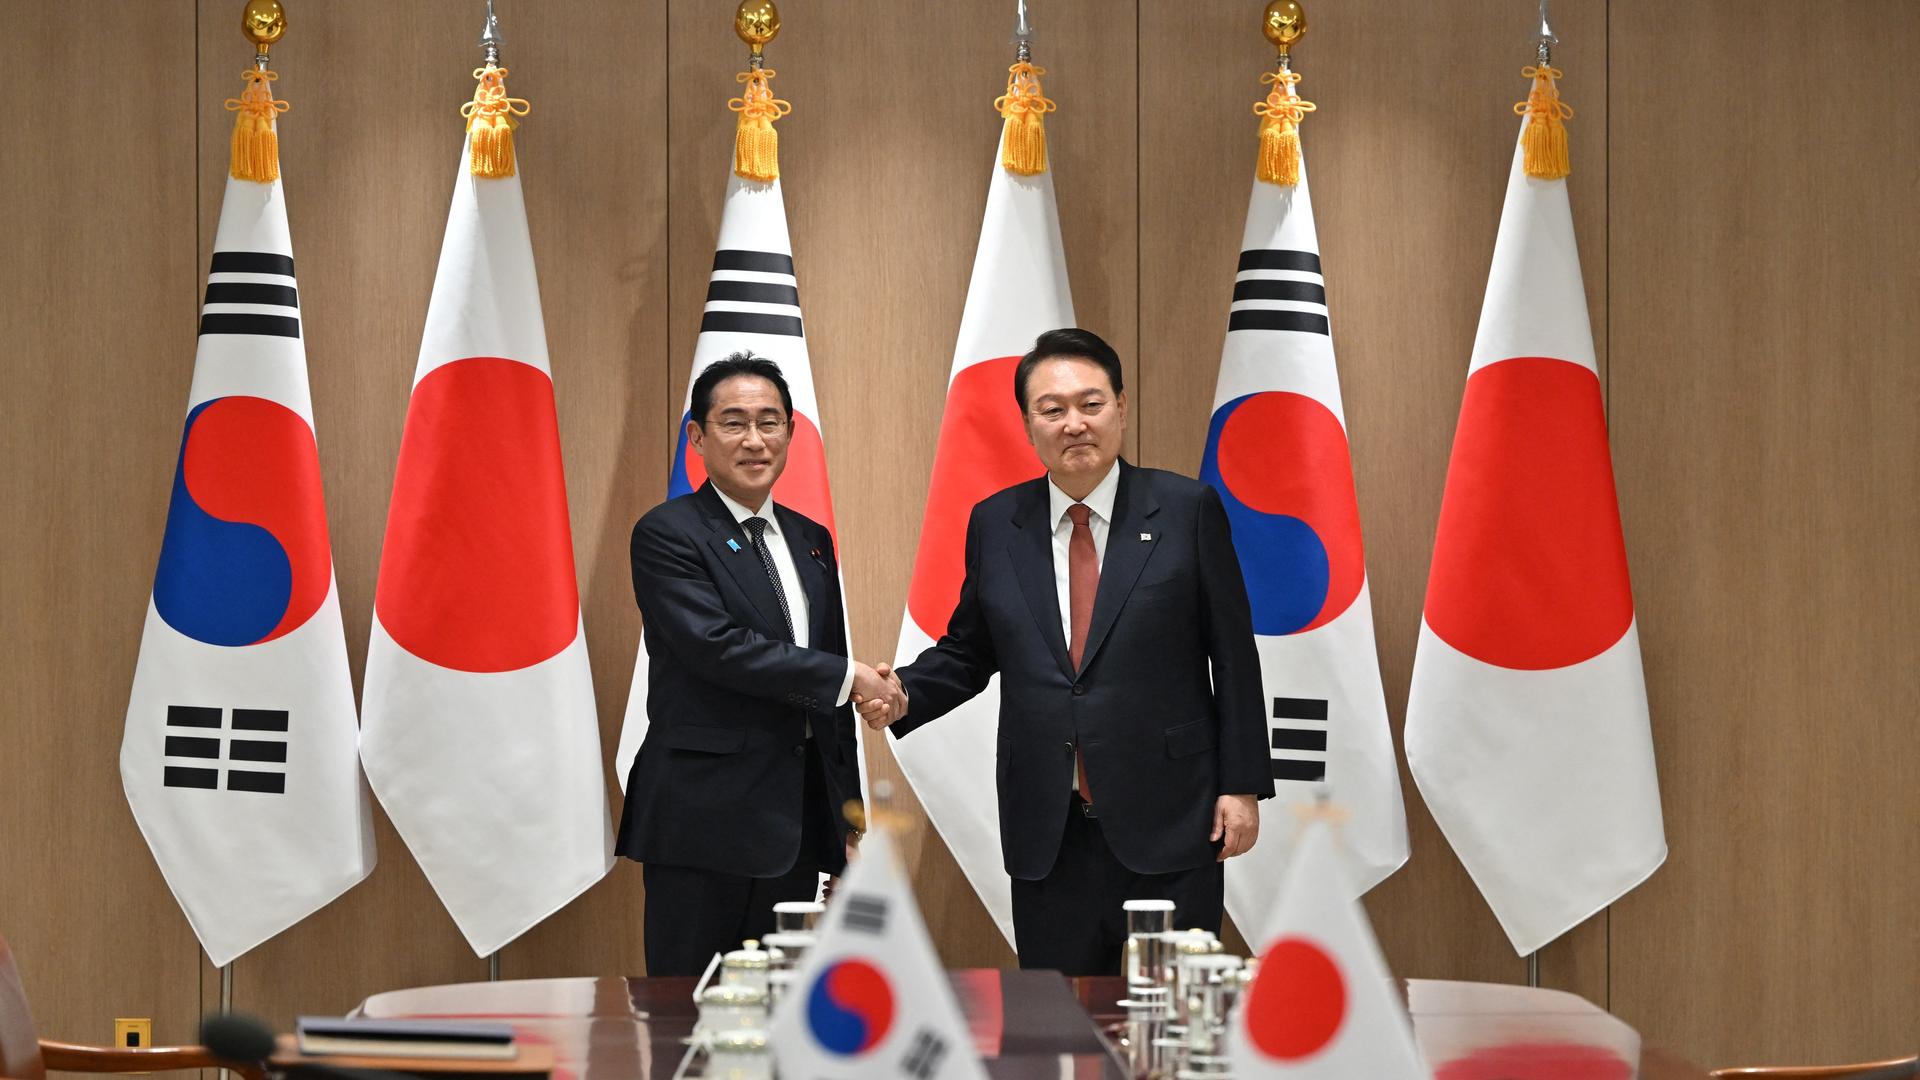 Japans Ministerpräsident Kishida (l.) trifft den südkoreanischen Präsidenten Yoon in Seoul. Beide Politiker tragen einen schwarzen Anzug und schütteln sich die Hände während sie in einem Konferenzraum stehen; im Hintergrund sind die beiden Landesflaggen zu sehen.